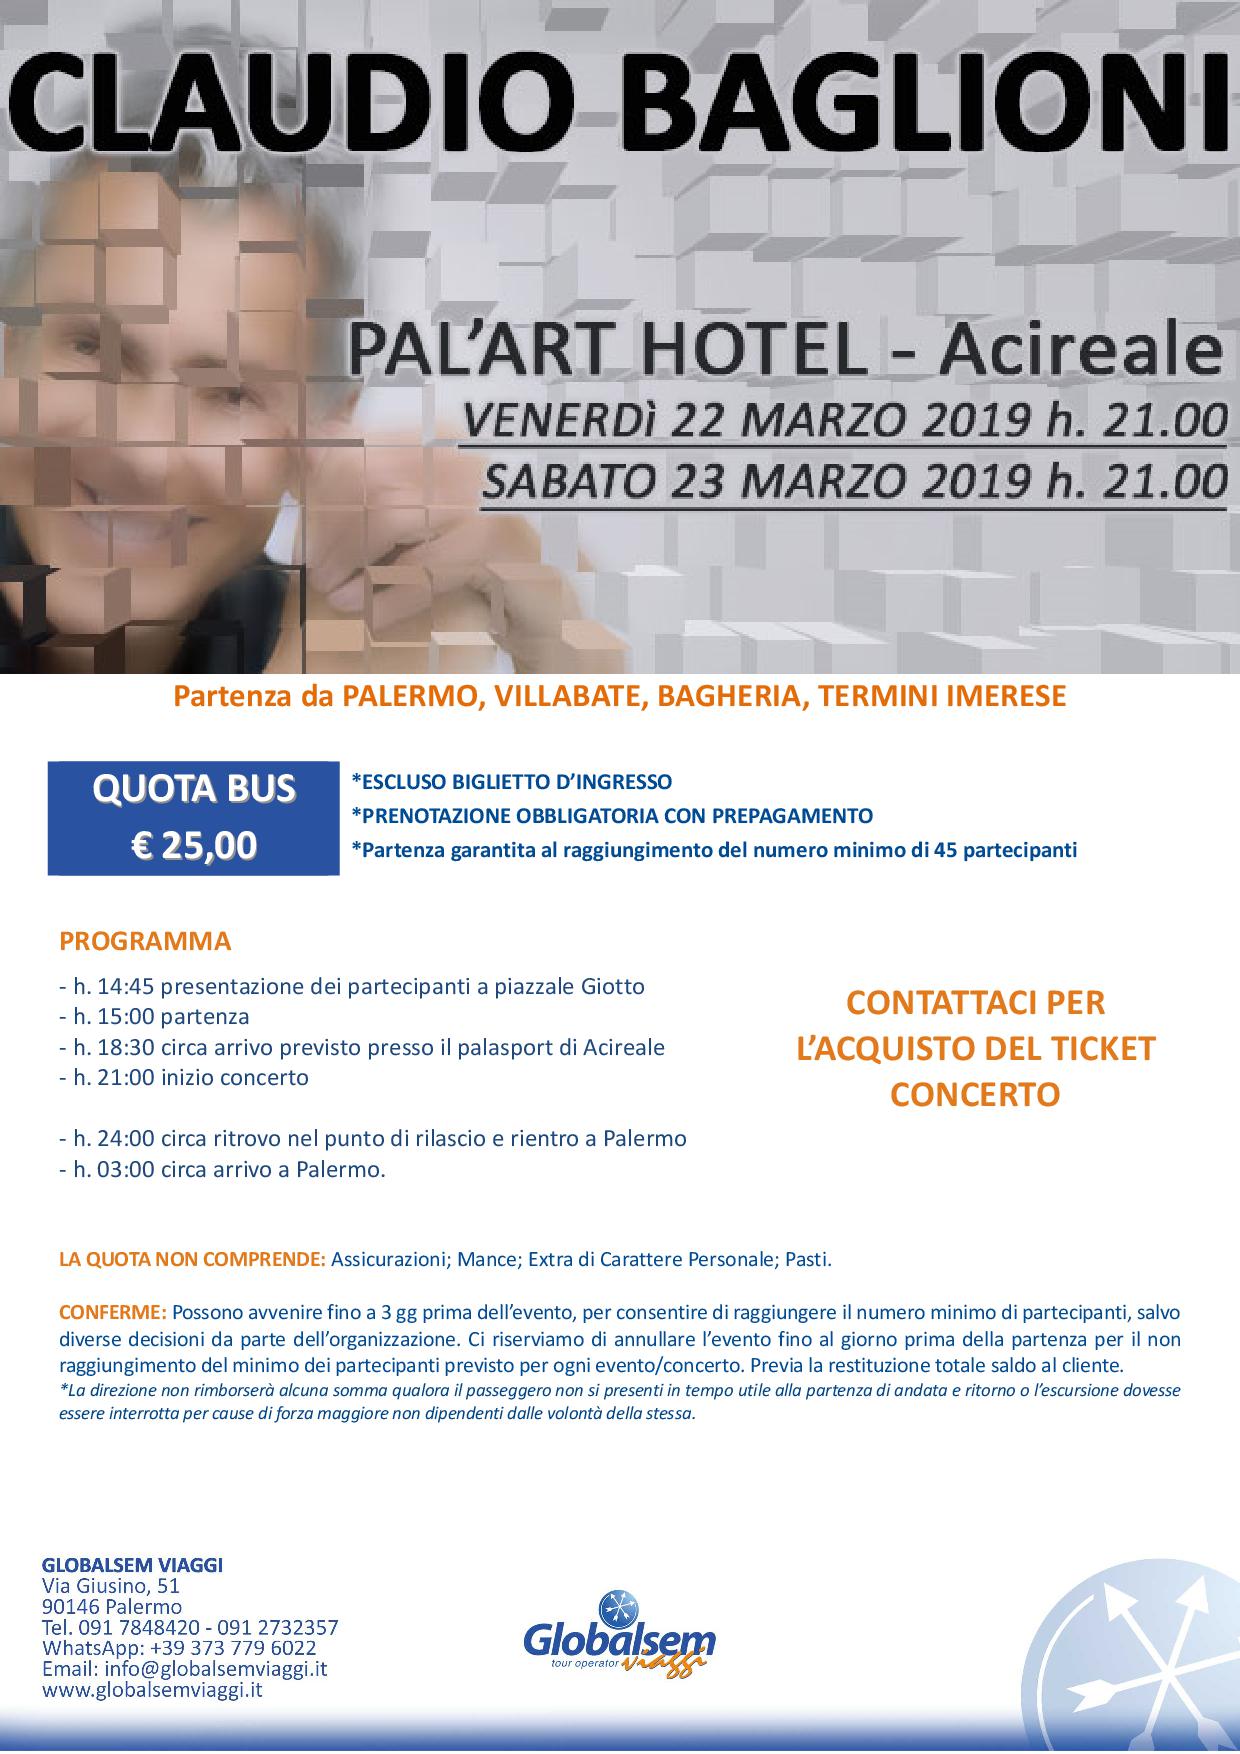 Claudio BAGLIONI in CONCERTO marzo 2019 PALASPORT Acireale (CT) Pullman da Palermo